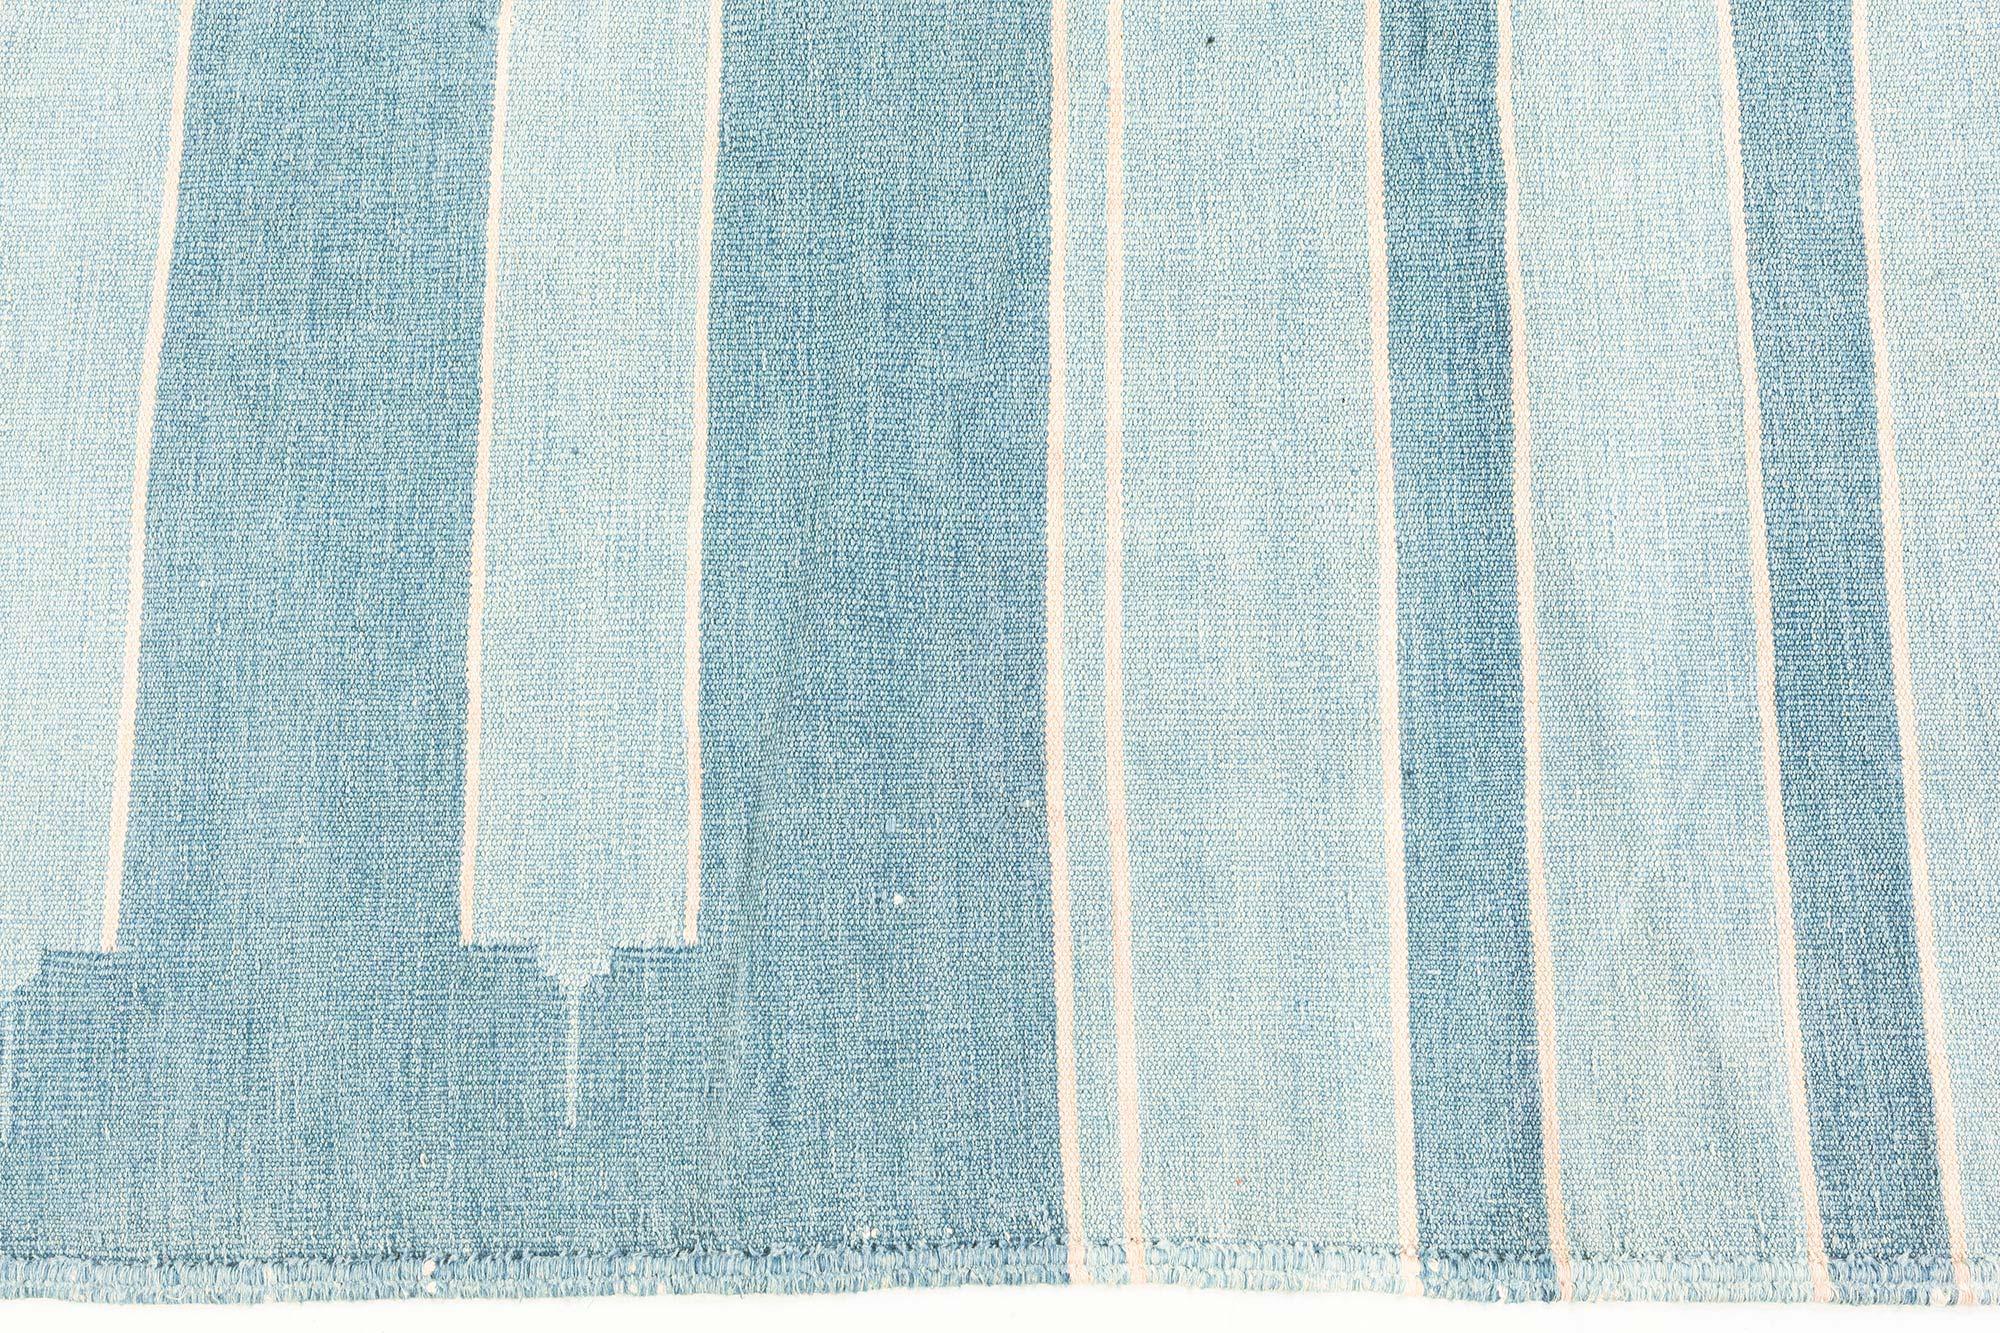 Vintage Indian Dhurrie striped blue beige ivory rug.
Size: 5'3